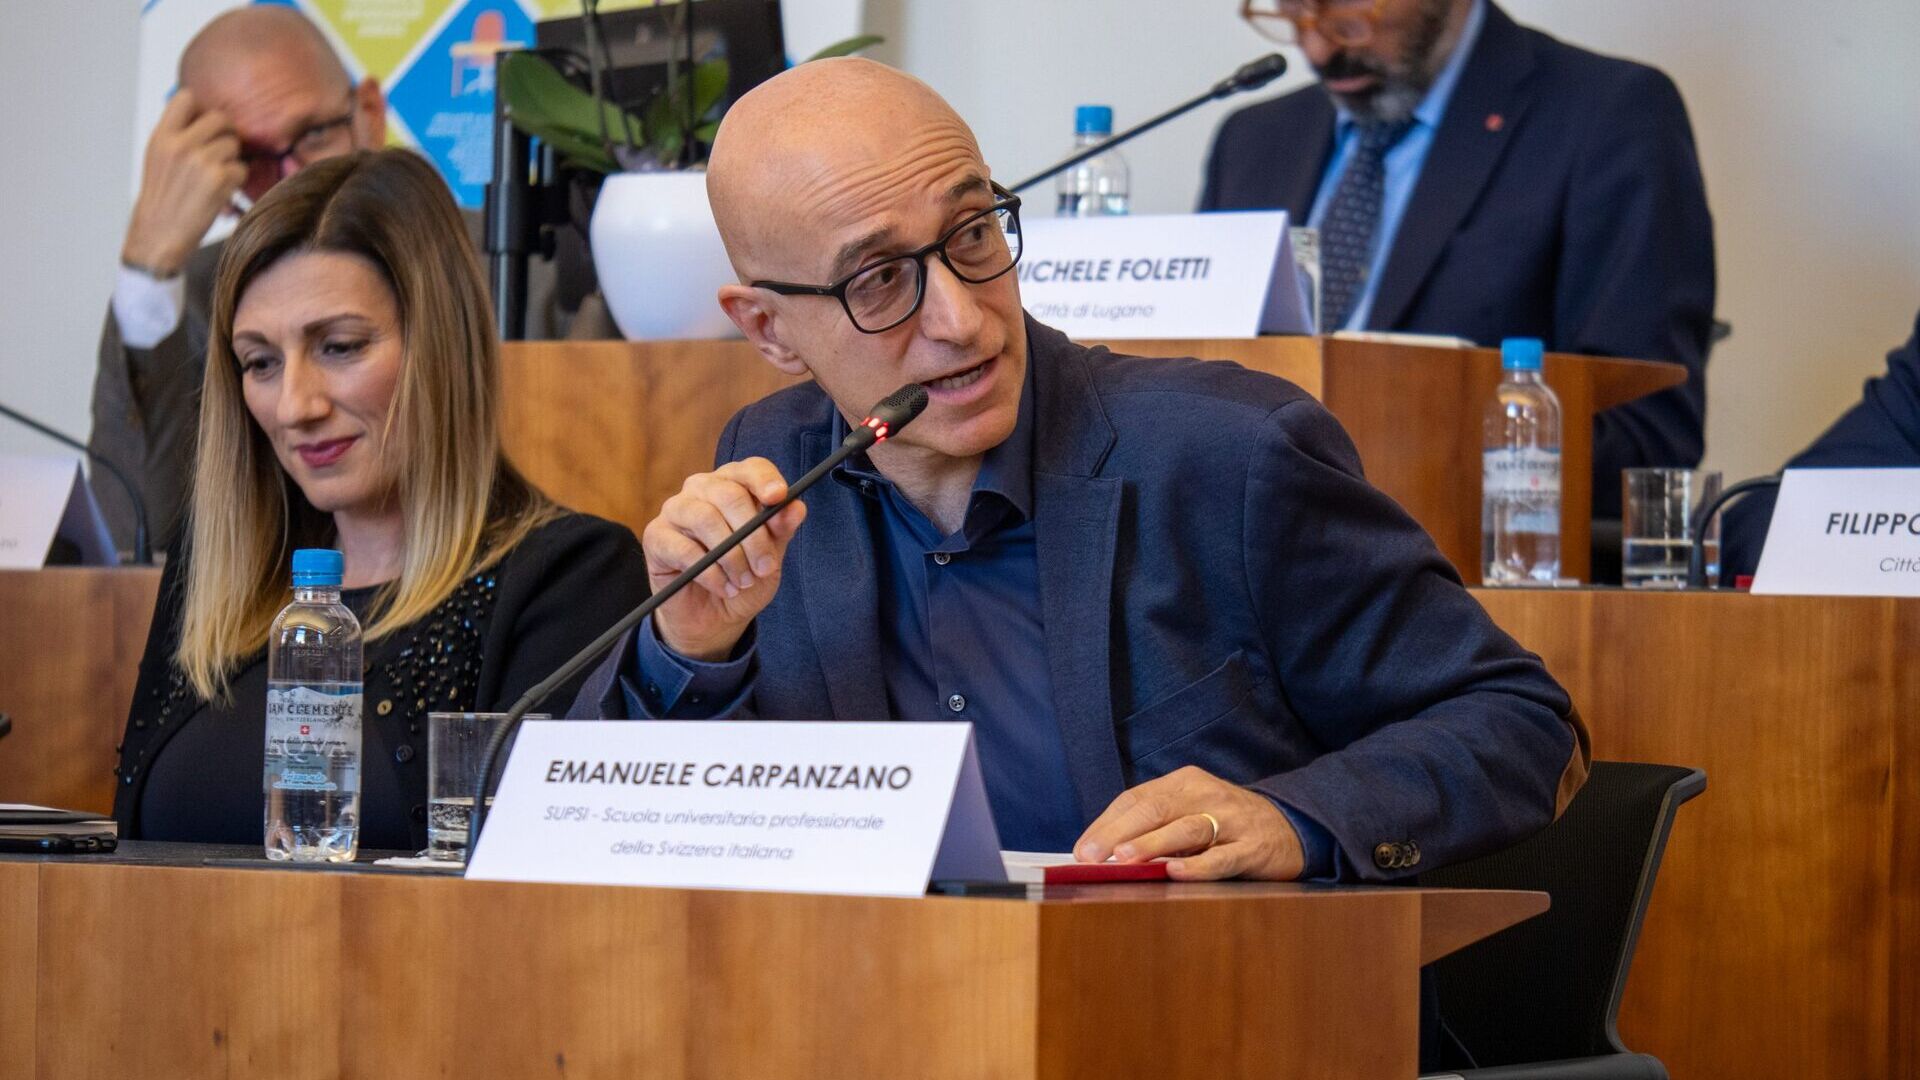 LTCC: Emanuele Carpanzano er direktør for forskning, utvikling og kunnskapsoverføring ved University of Applied Sciences and Arts of Italian Switzerland